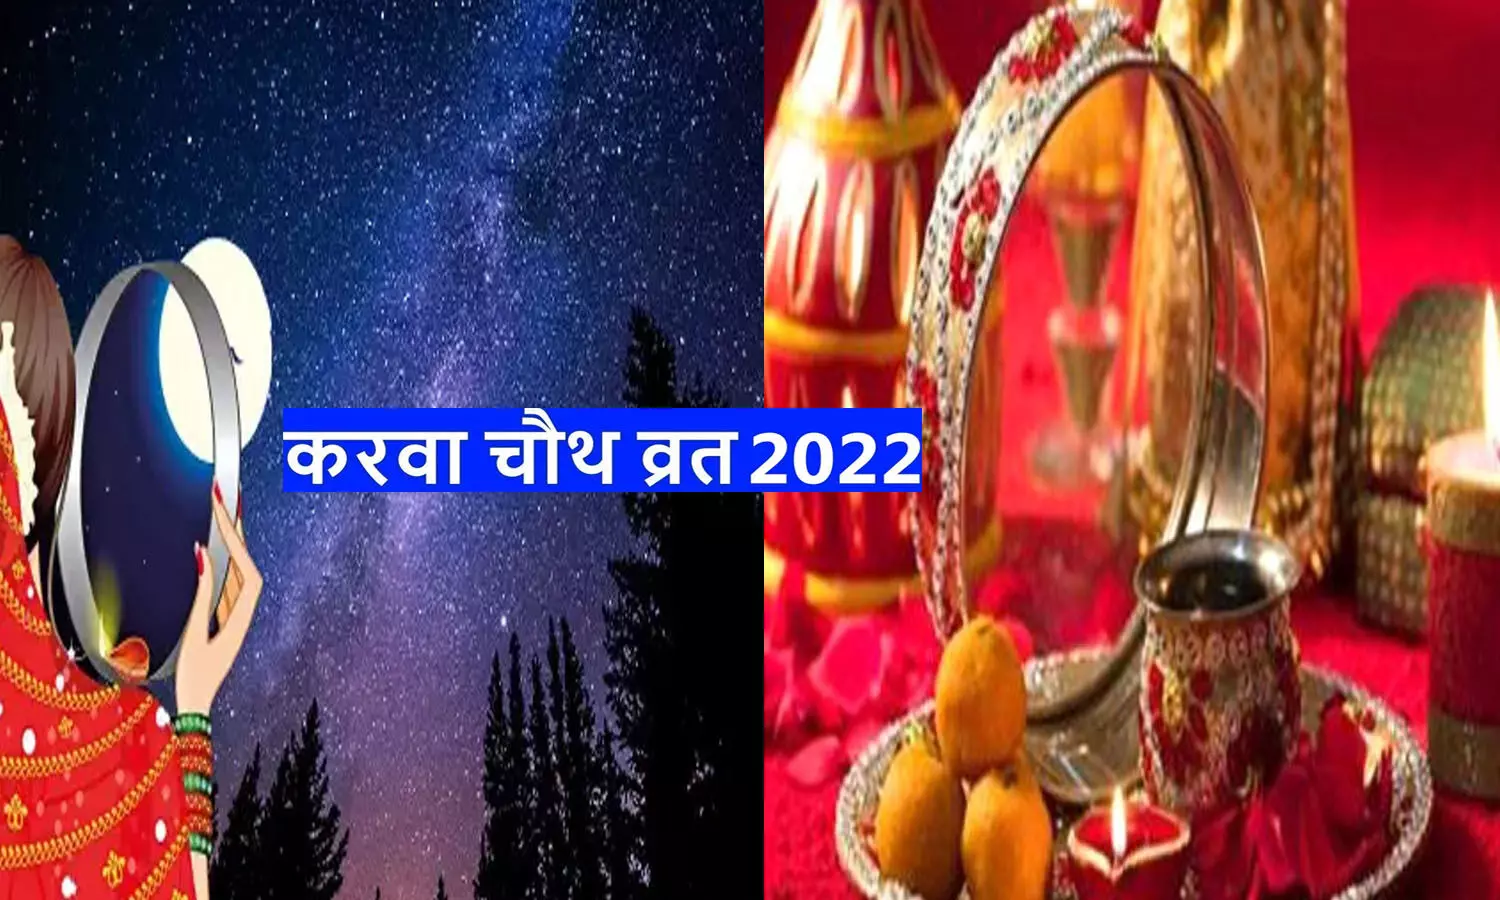 Karwa Chauth 2022 Kab Hai Date: करवा चौथ इस साल क्यों खास है , जानिए यह व्रत, शुभ-मुहूर्त और विधि